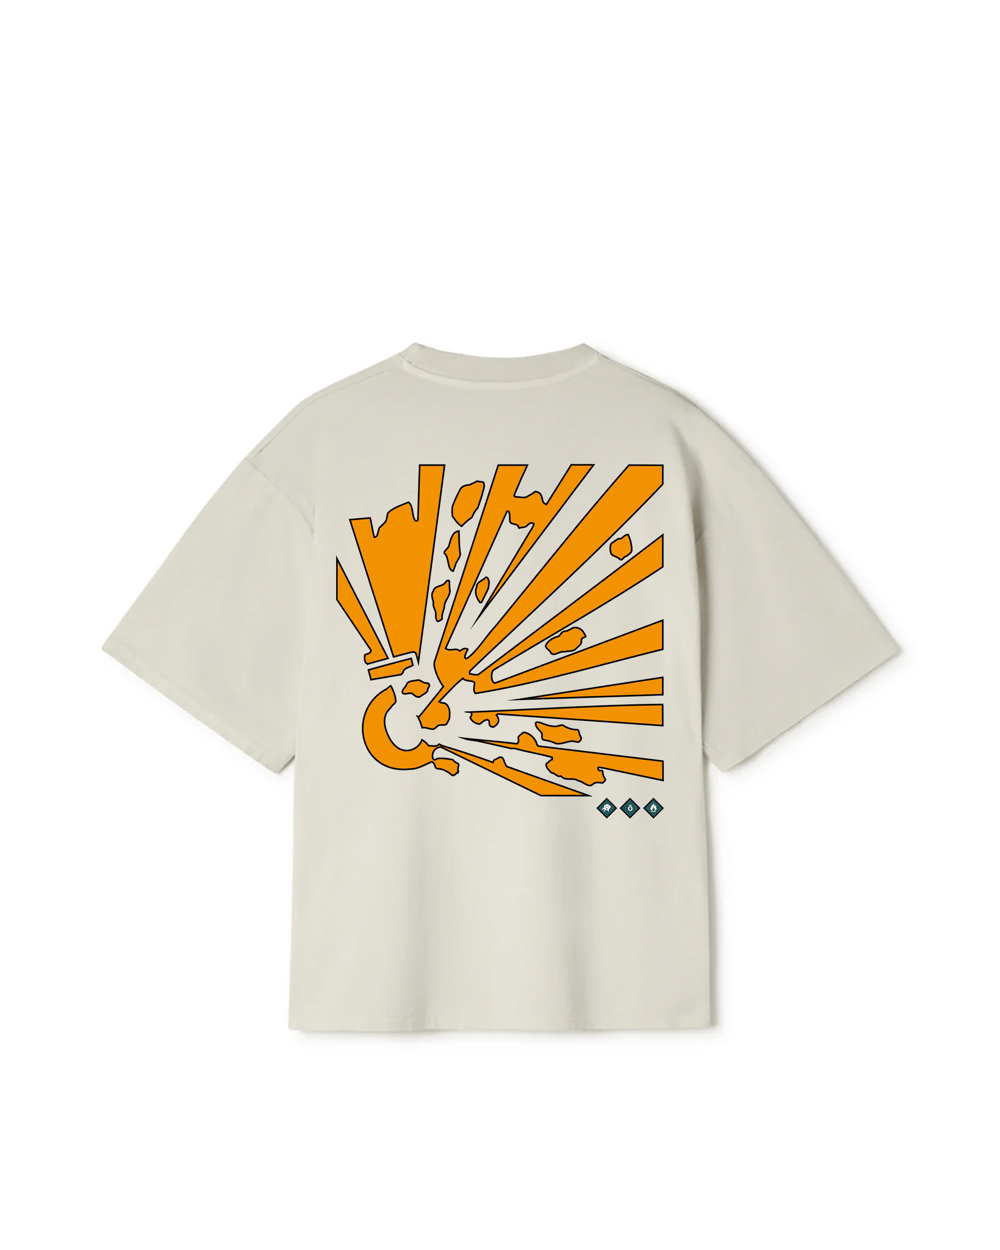 onryō x wotl - Creme T-Shirt